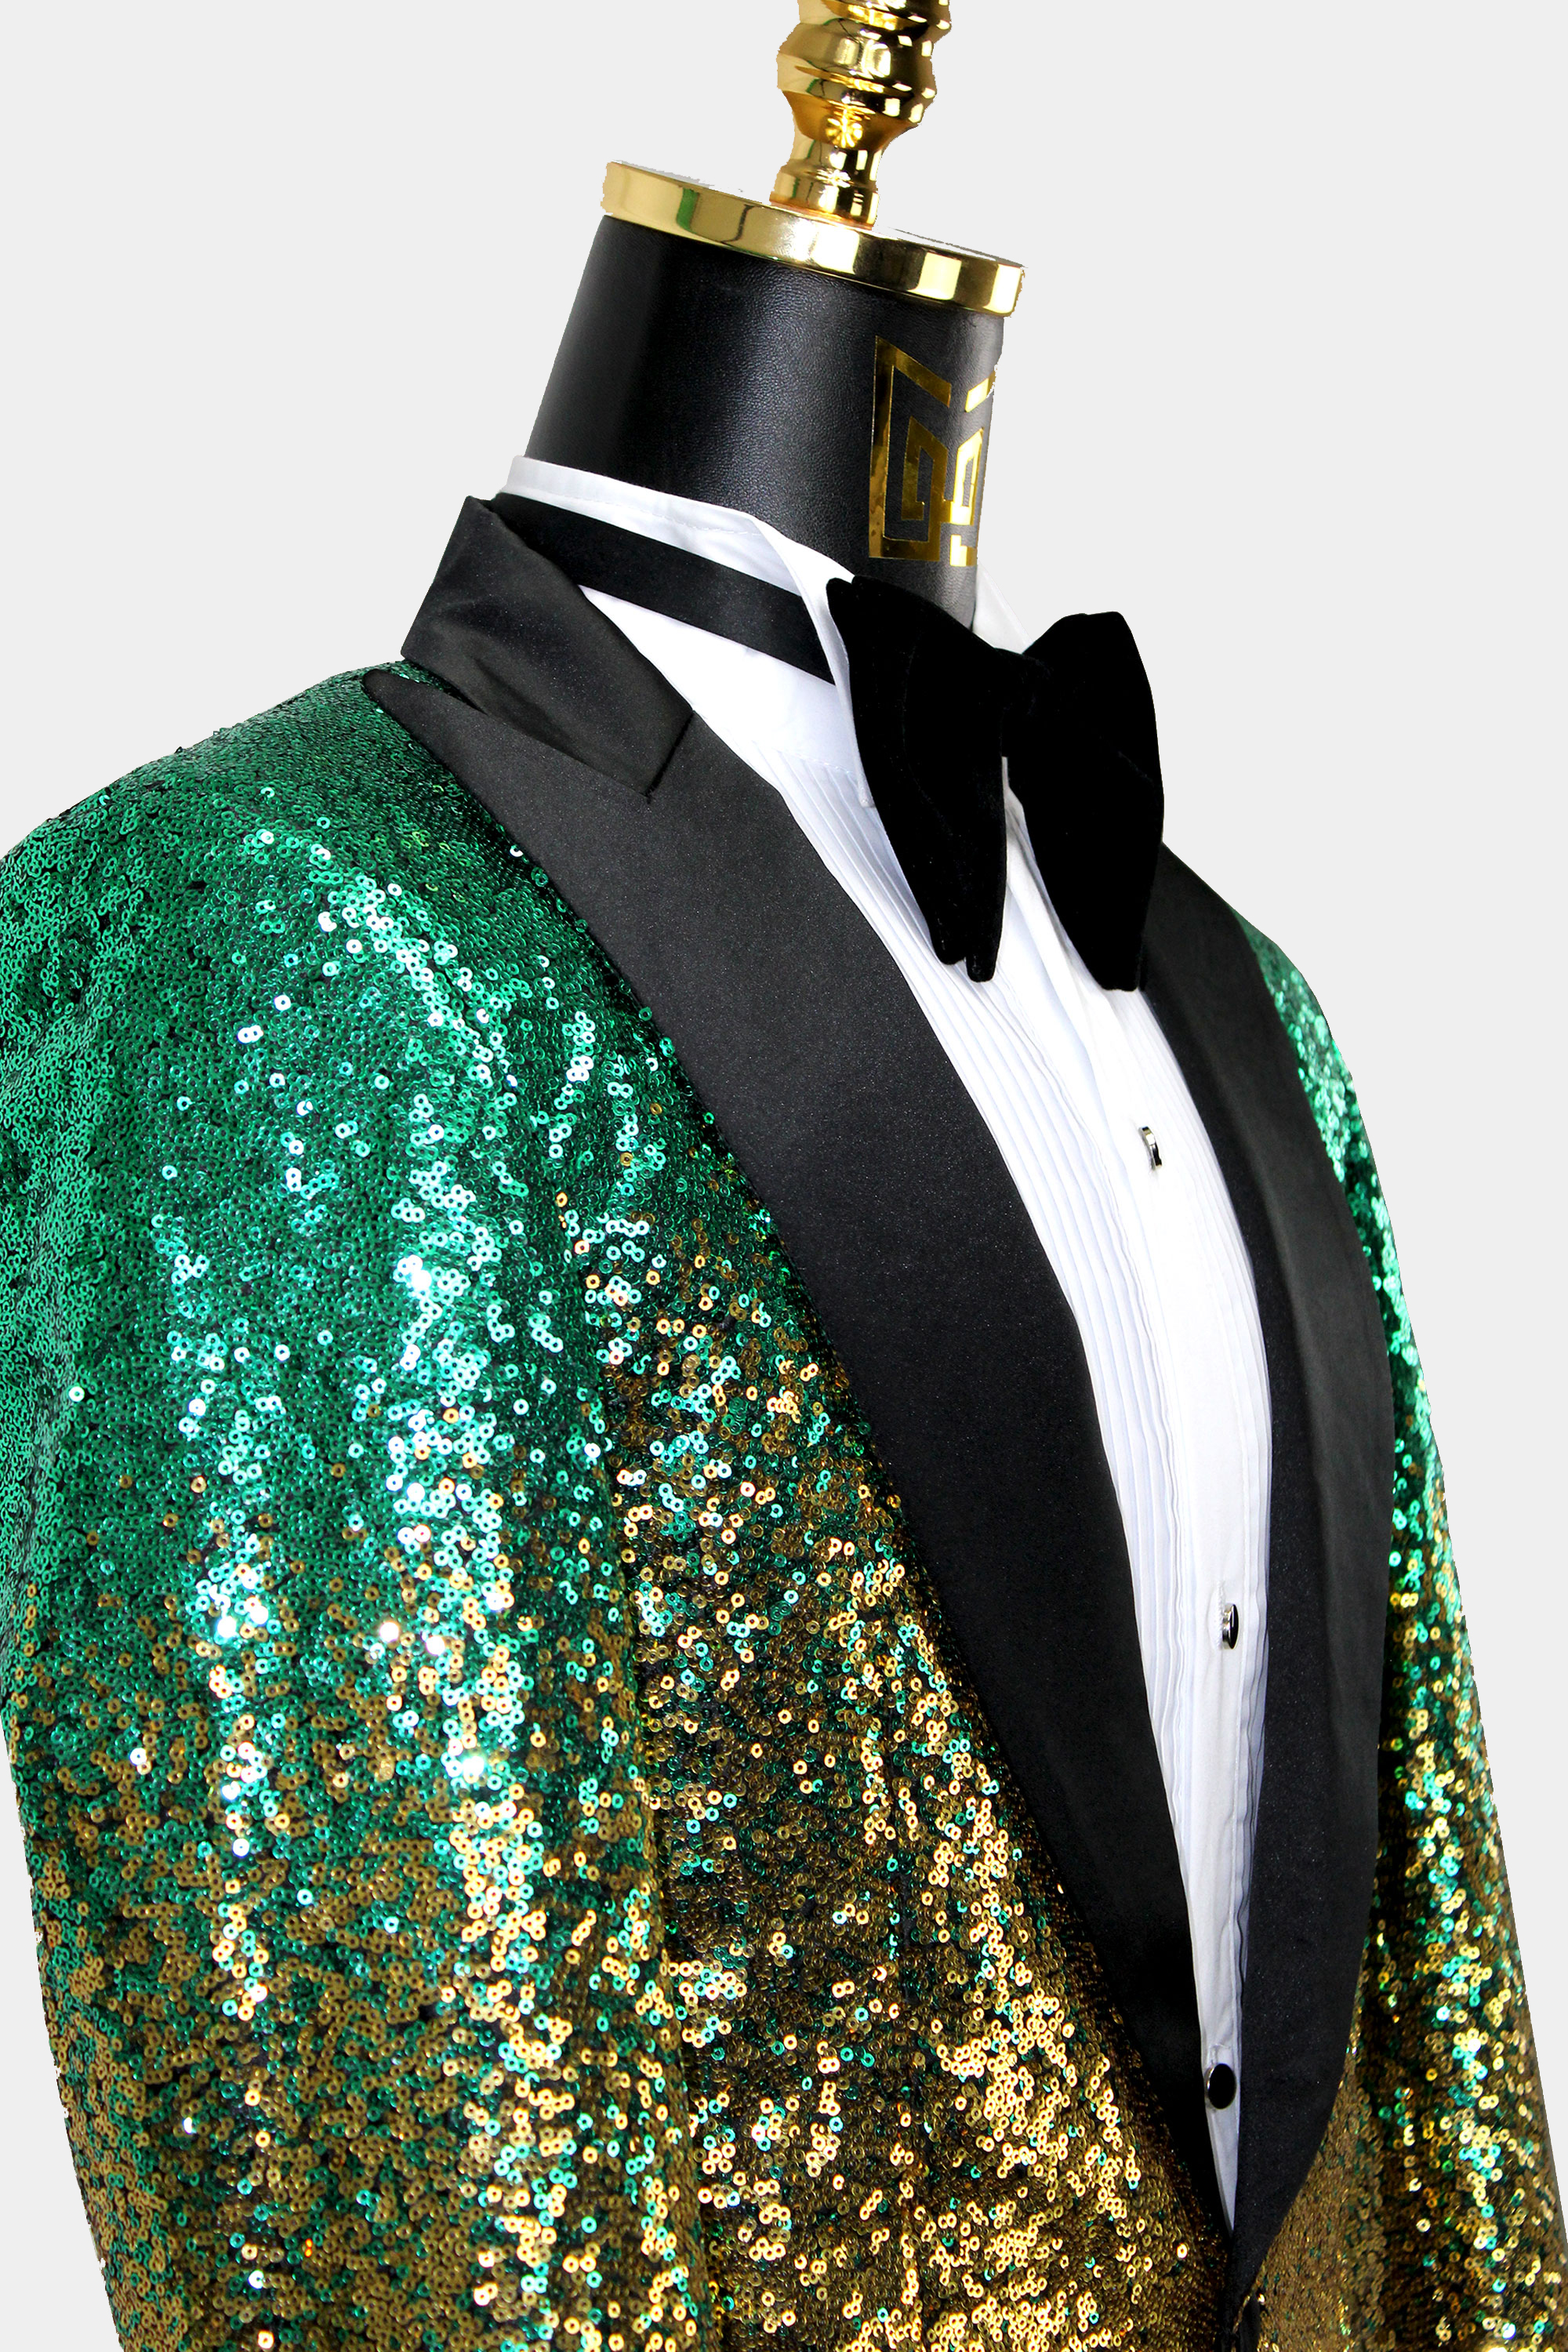 https://www.gentlemansguru.com/wp-content/uploads/2019/08/Mens-Green-And-Gold-Sequin-Jacket-Blazer-from-Gentlemansguru.com_-1.jpg